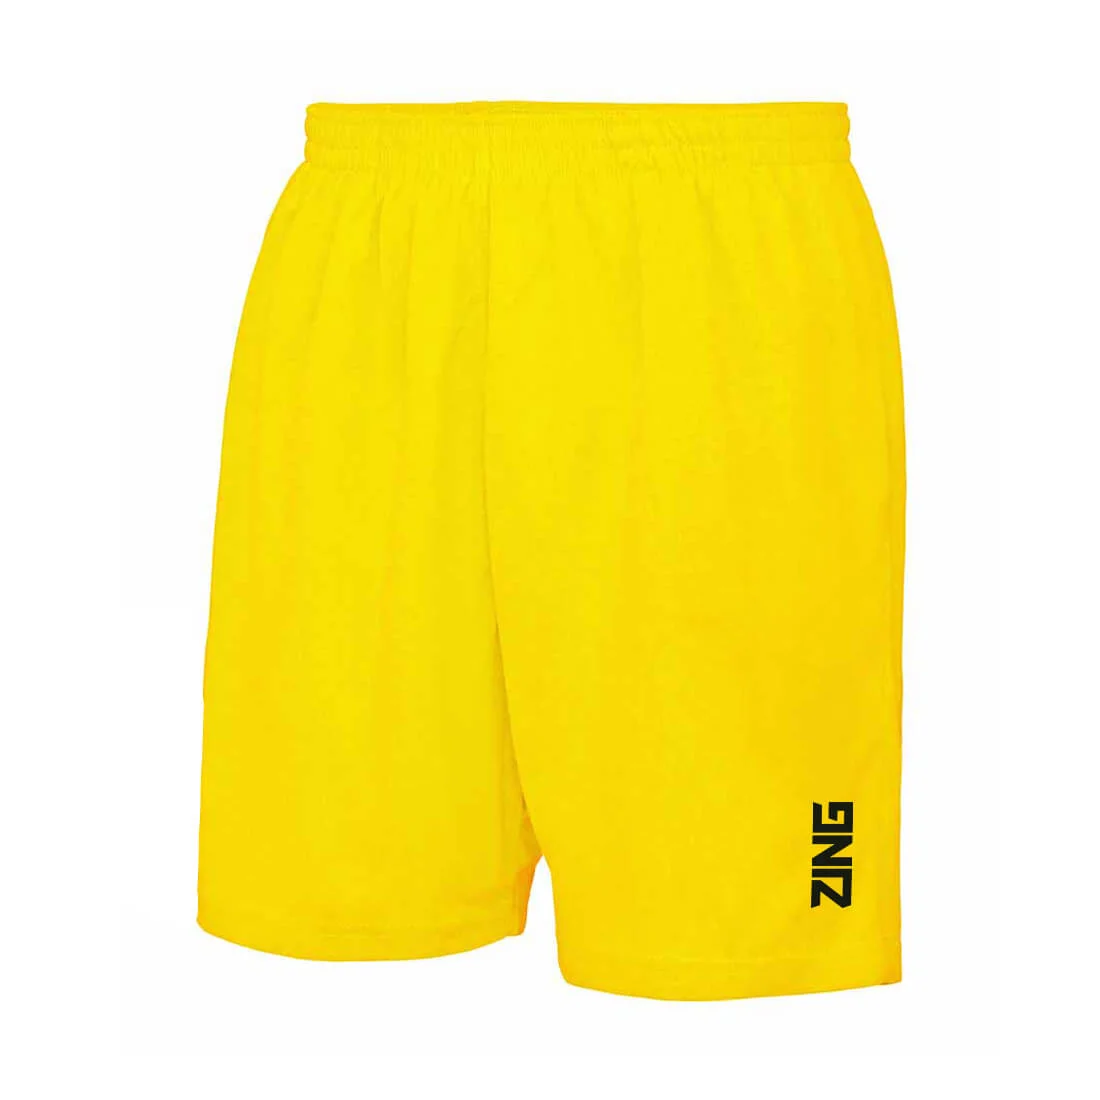 ZING Sportswear Training Shorts | Training Kit and Teamwear - Yellow